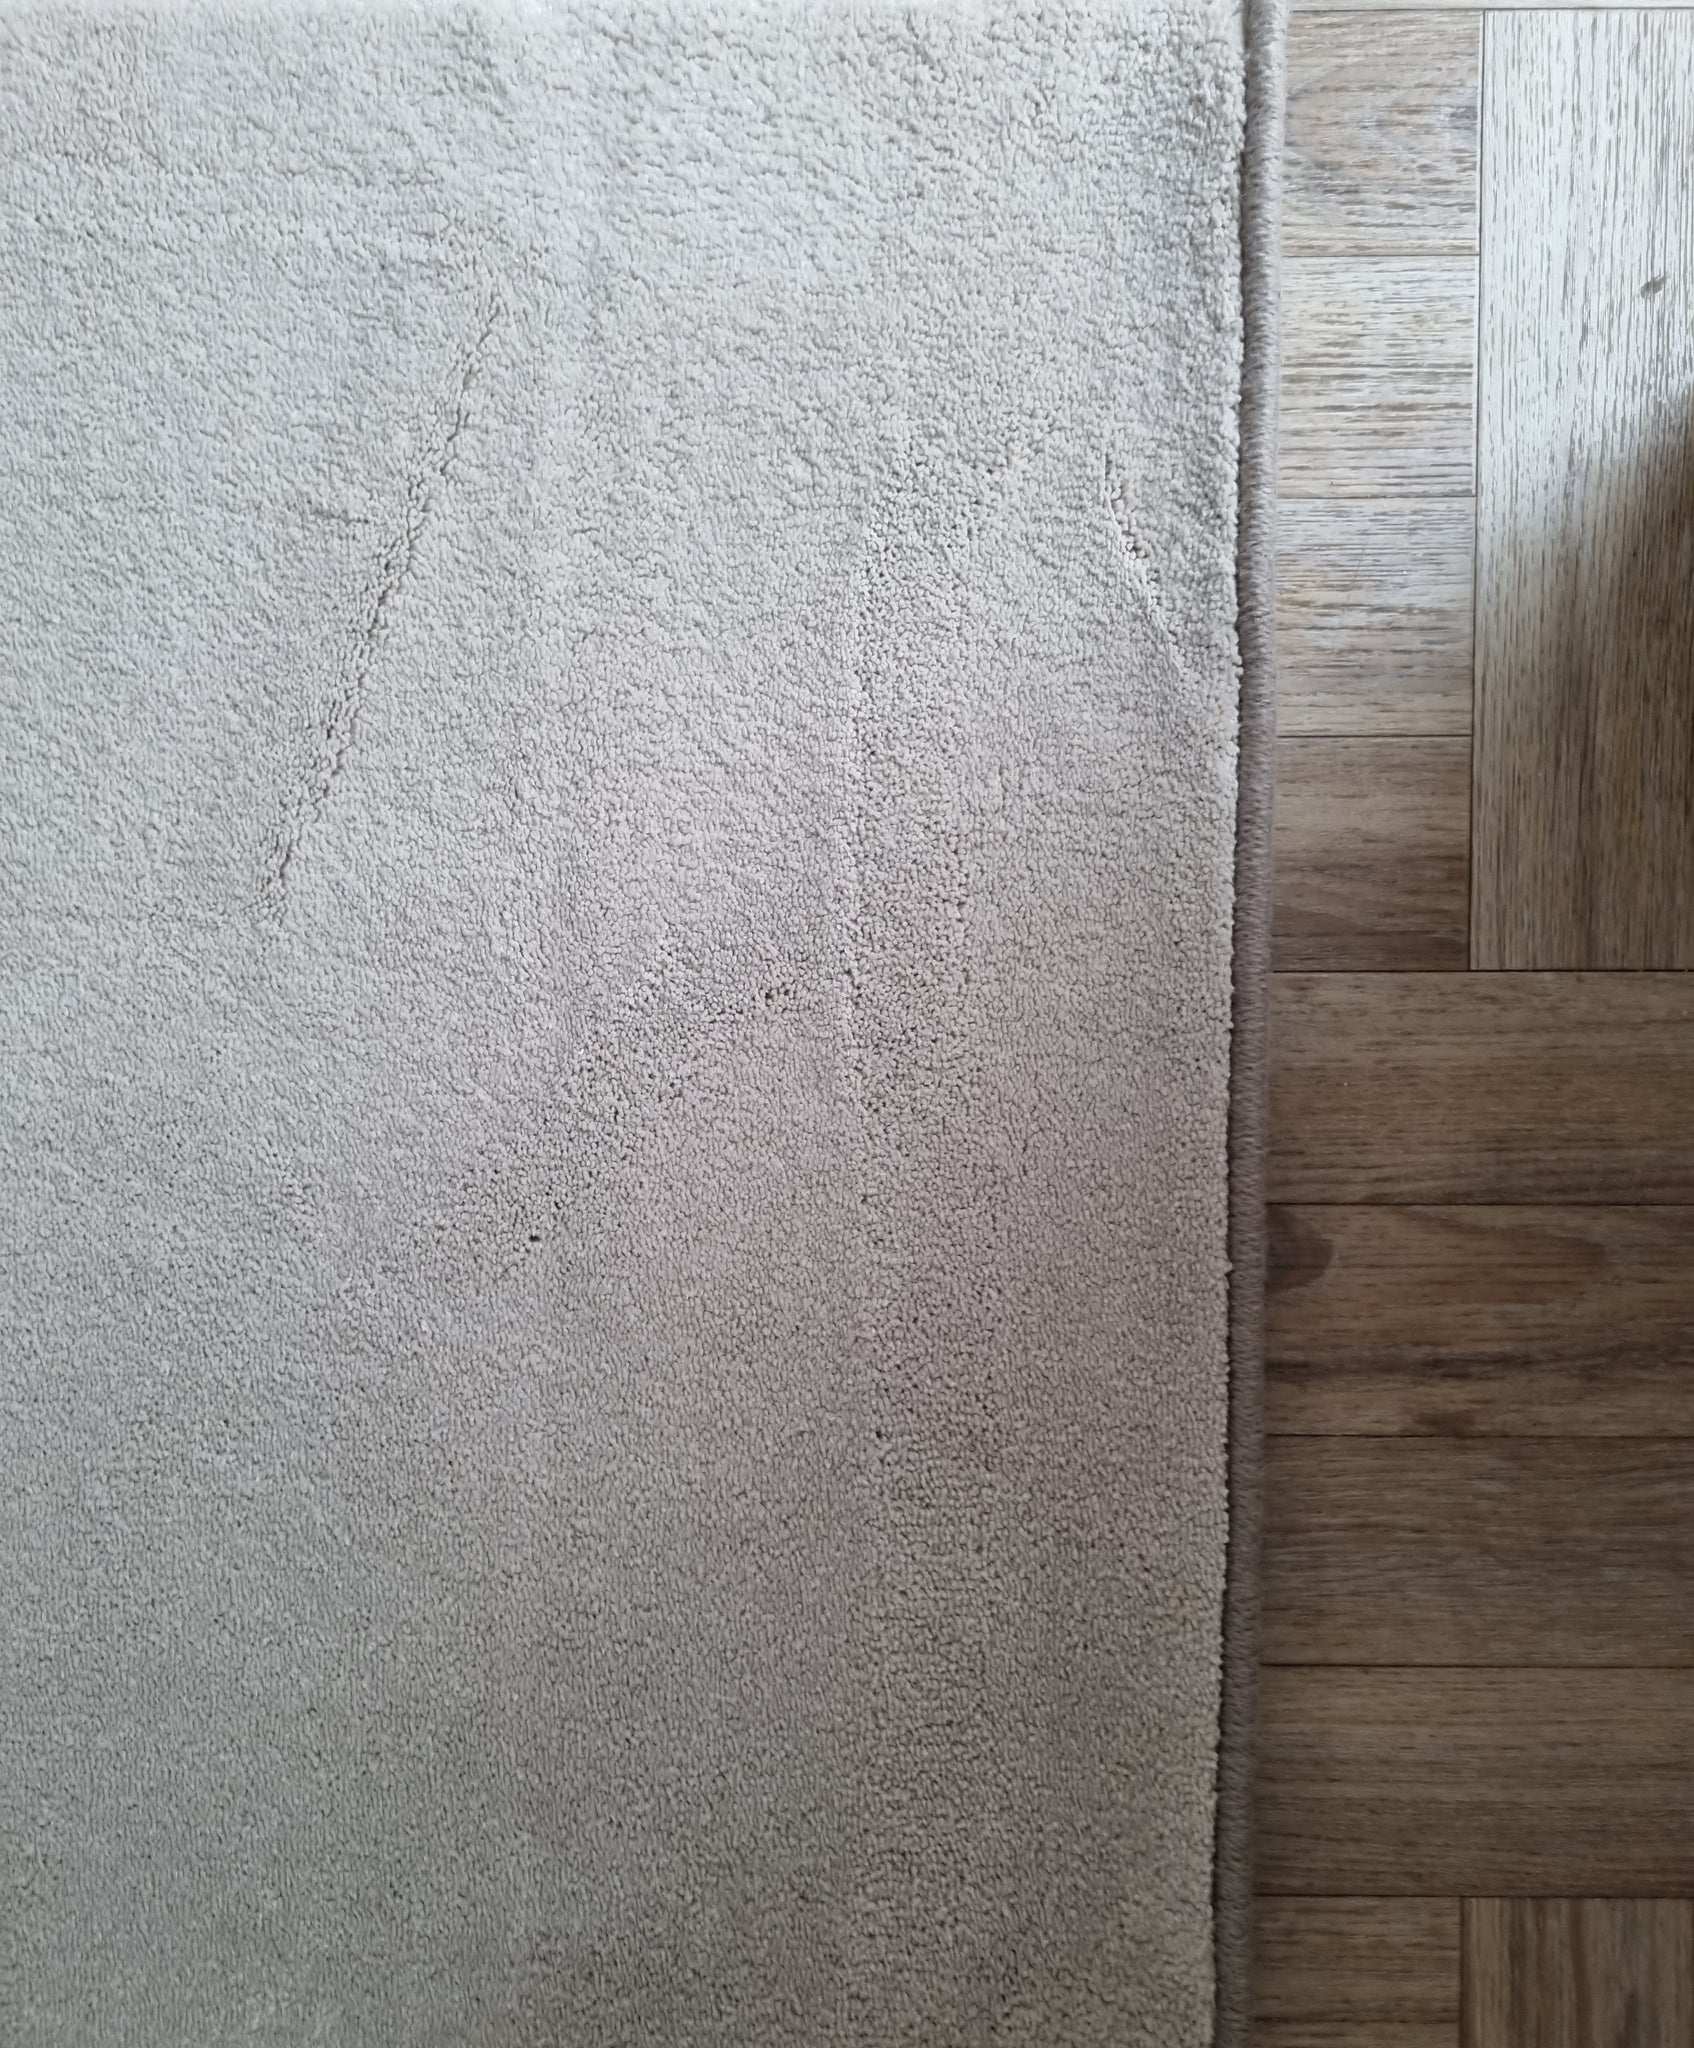 Nylon carpet floor, landing hallway and floor runner rug with whipped border